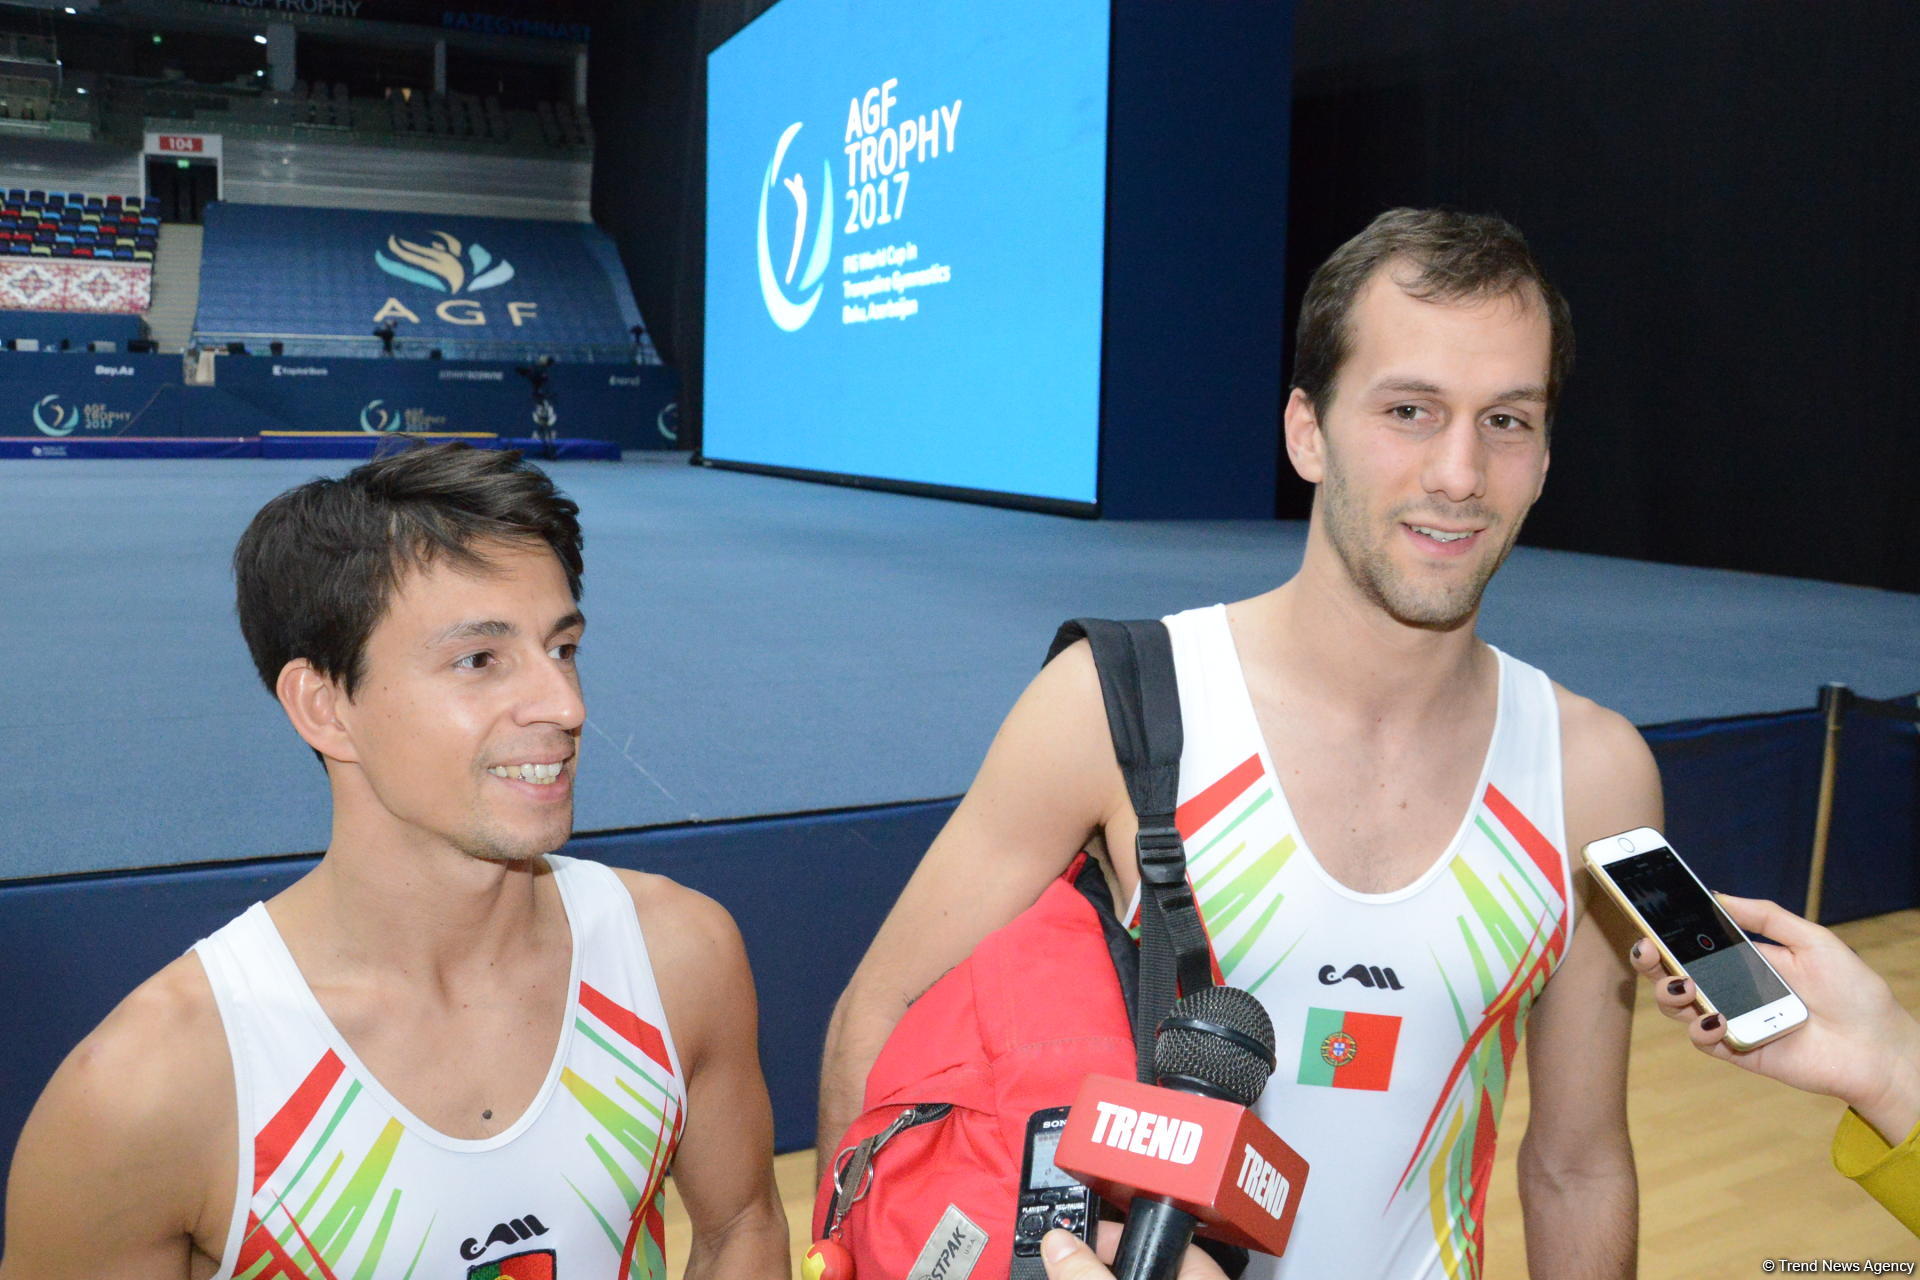 Федерация гимнастики Азербайджана смогла удивить нас новым световым оформлением зала - португальские гимнасты